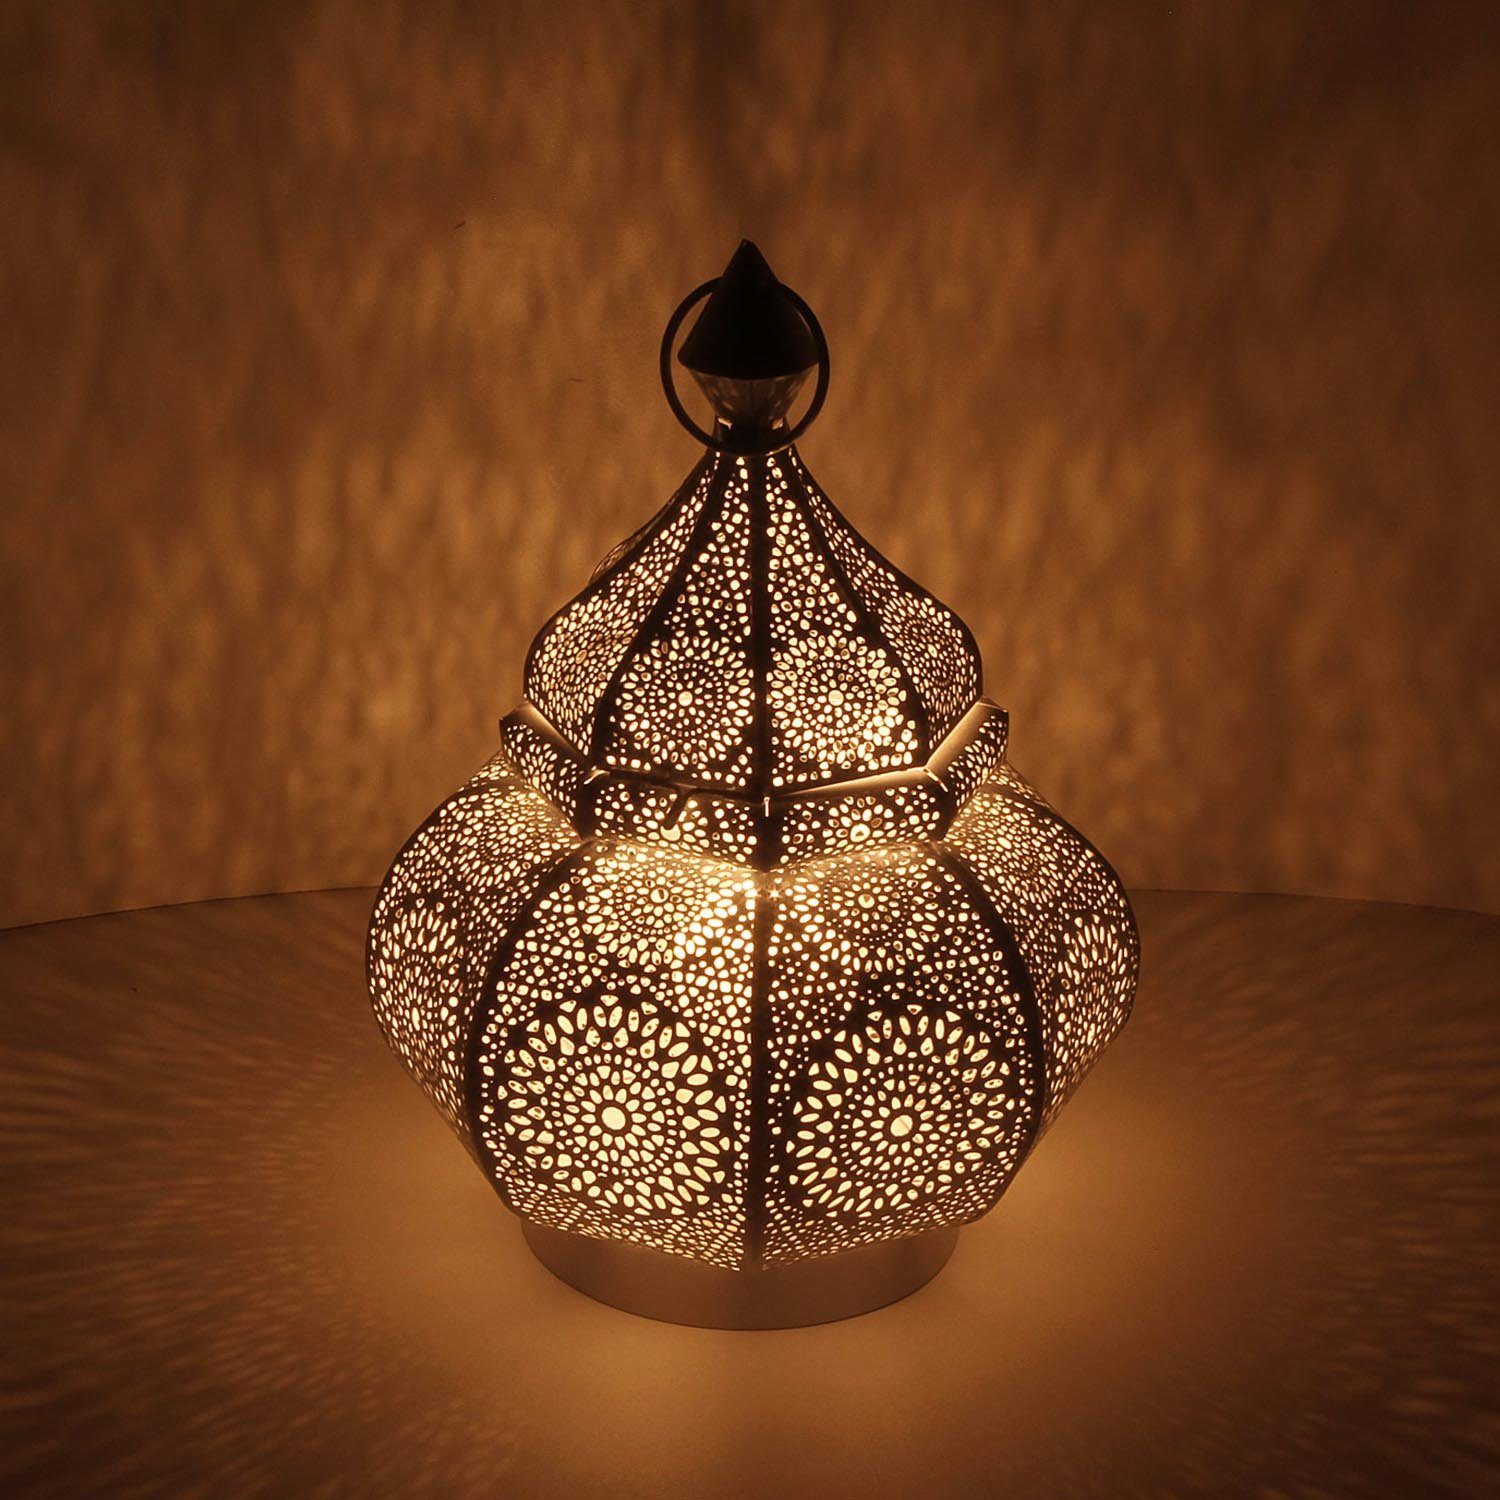 Casa Moro Bodenwindlicht Orientalisches Windlicht Anida gold 30cm aus Metall, Marokkanische Laterne Gartenlaterne, hängend oder stehend, Schöne Ramadan Tischlaterne für Hochzeit Feier Deko Weihnachten Geschenk, LN2060